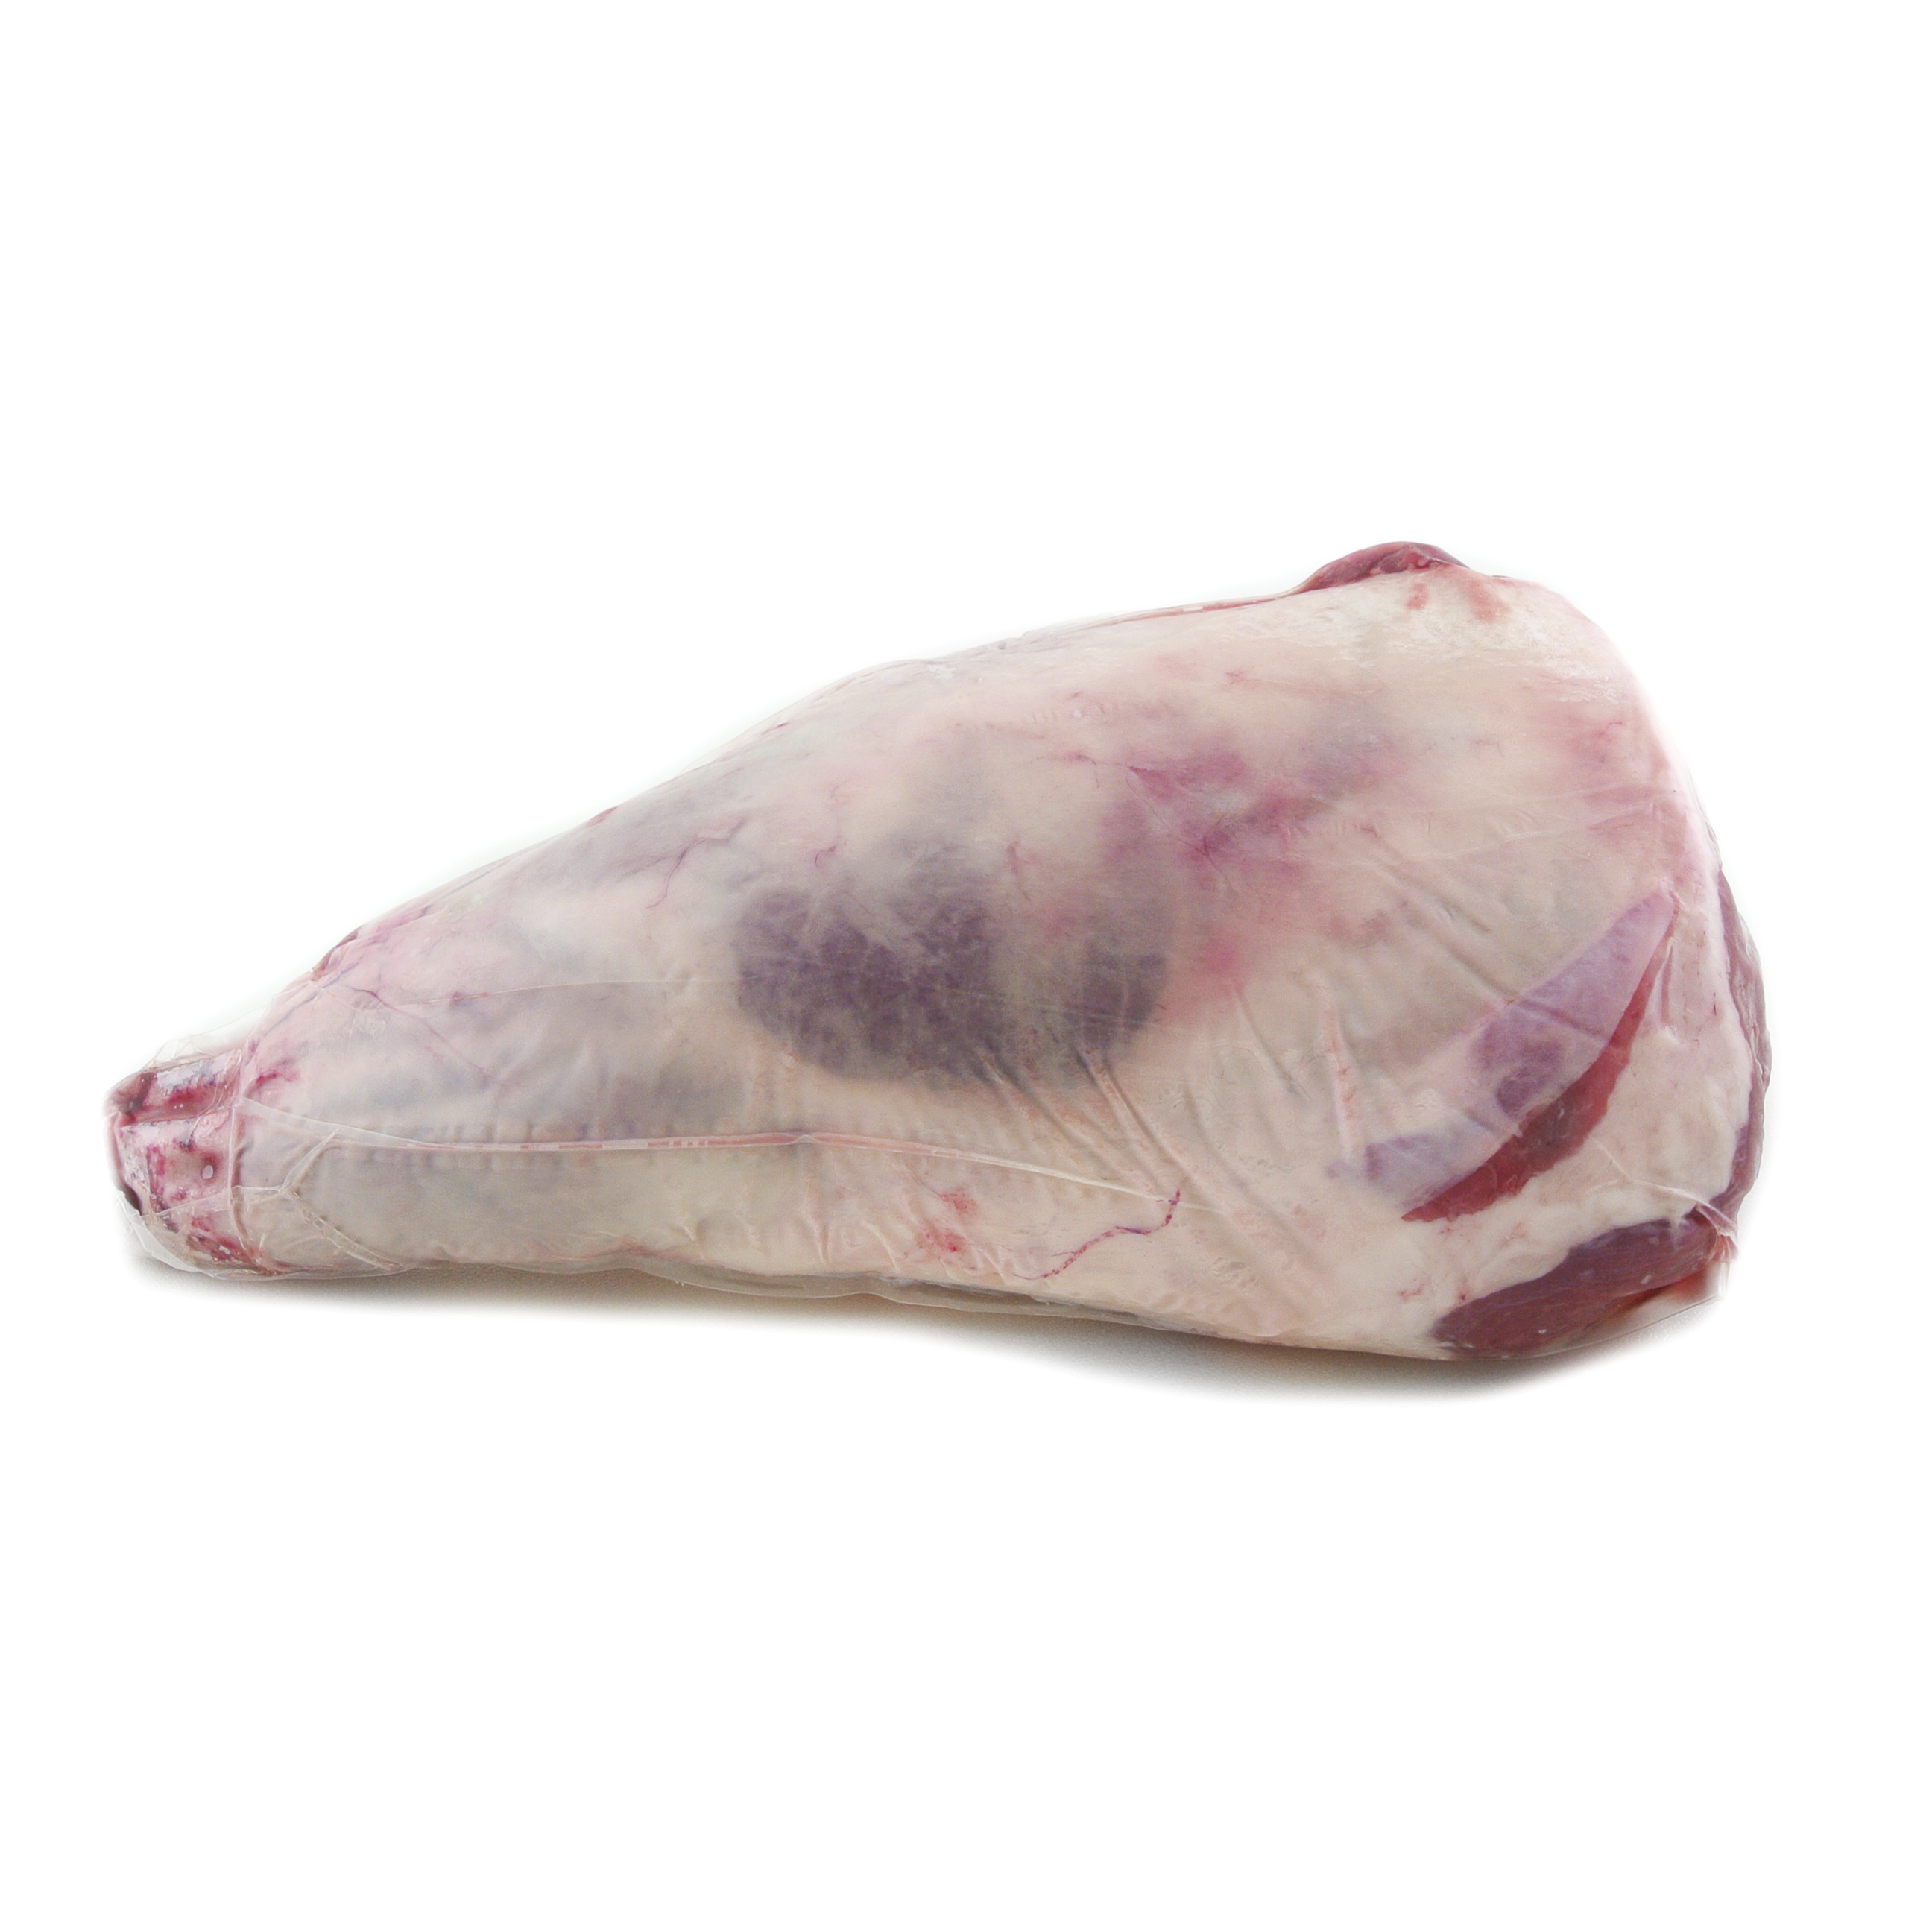 Frozen AUS Bultarra Organic Bone-in Lamb Leg